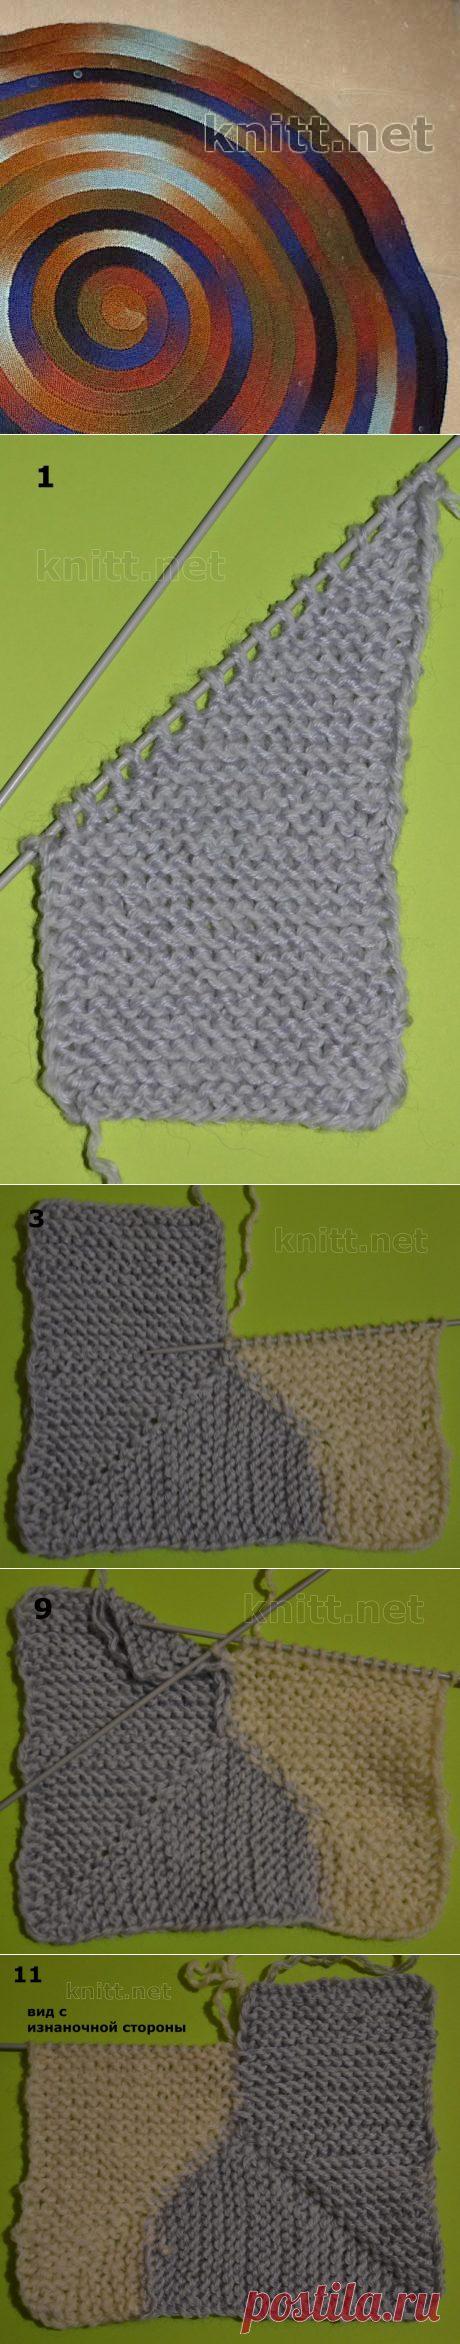 Плед-одеяло из 10 петель | knitt.net | Все о вязании